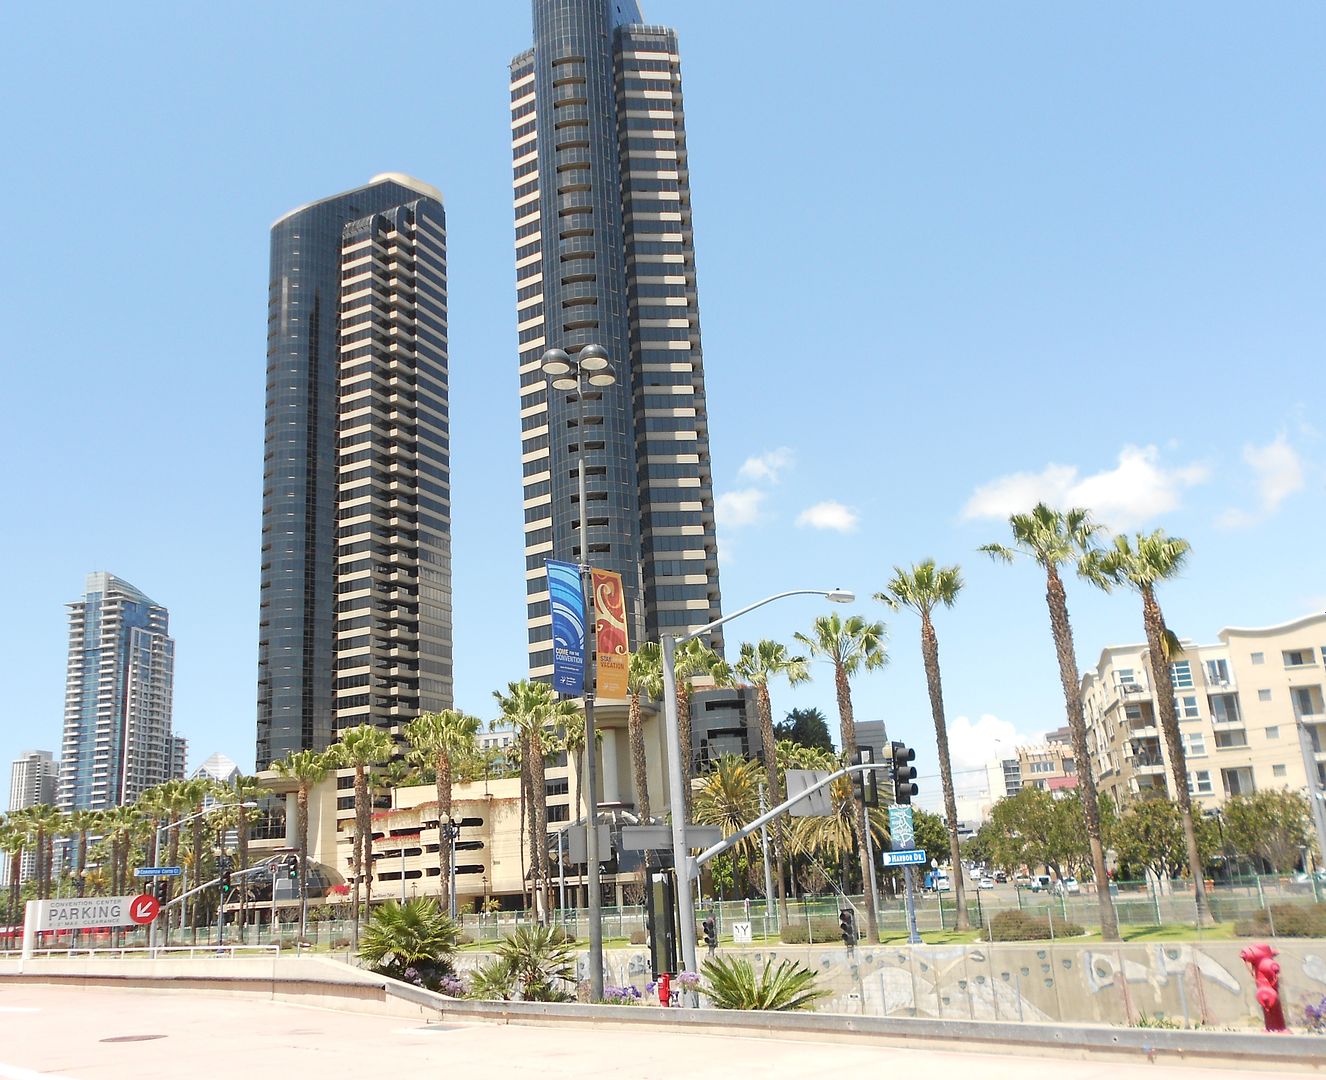 city of San Diego skyline